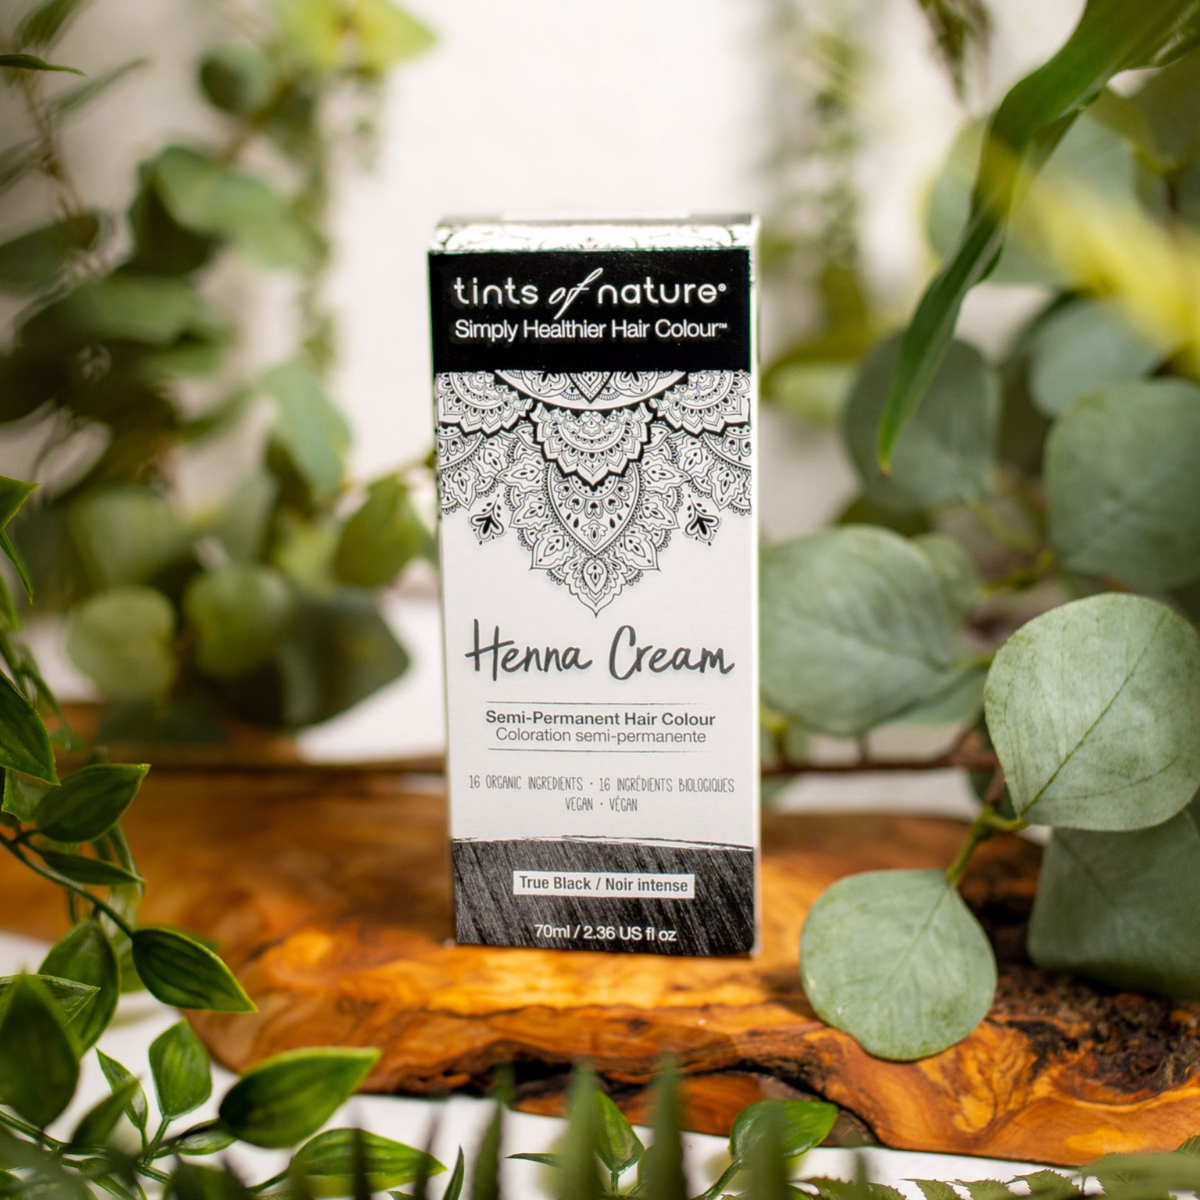 En æske Tints of Nature Henna Cream True Black - 70 ml siddende på et bord med planter, fremme sundhed og velvære.